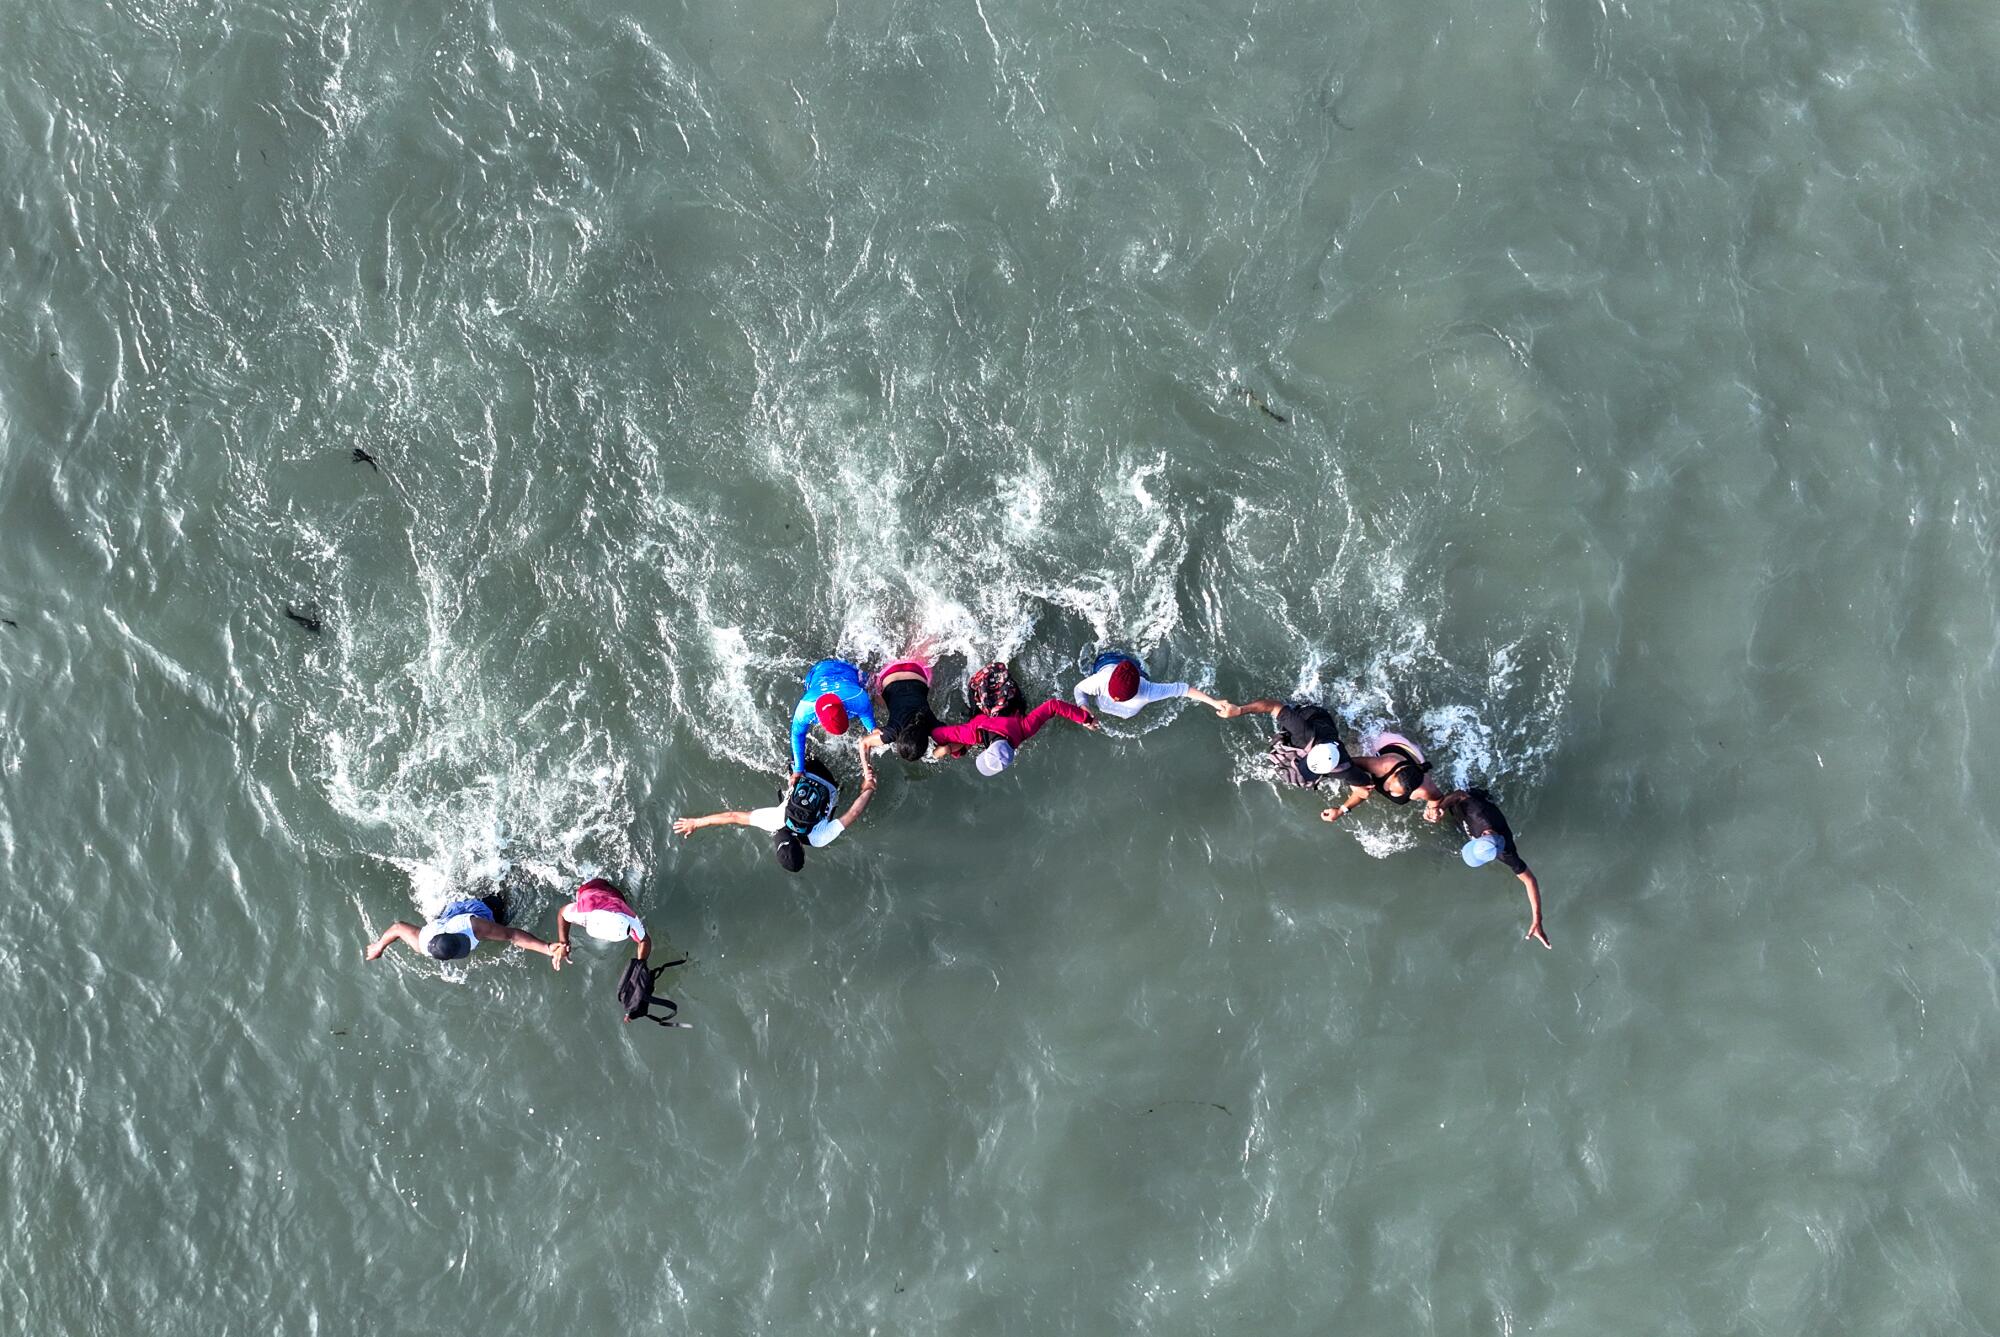   Вид сверху на людей, идущих по воде в очереди